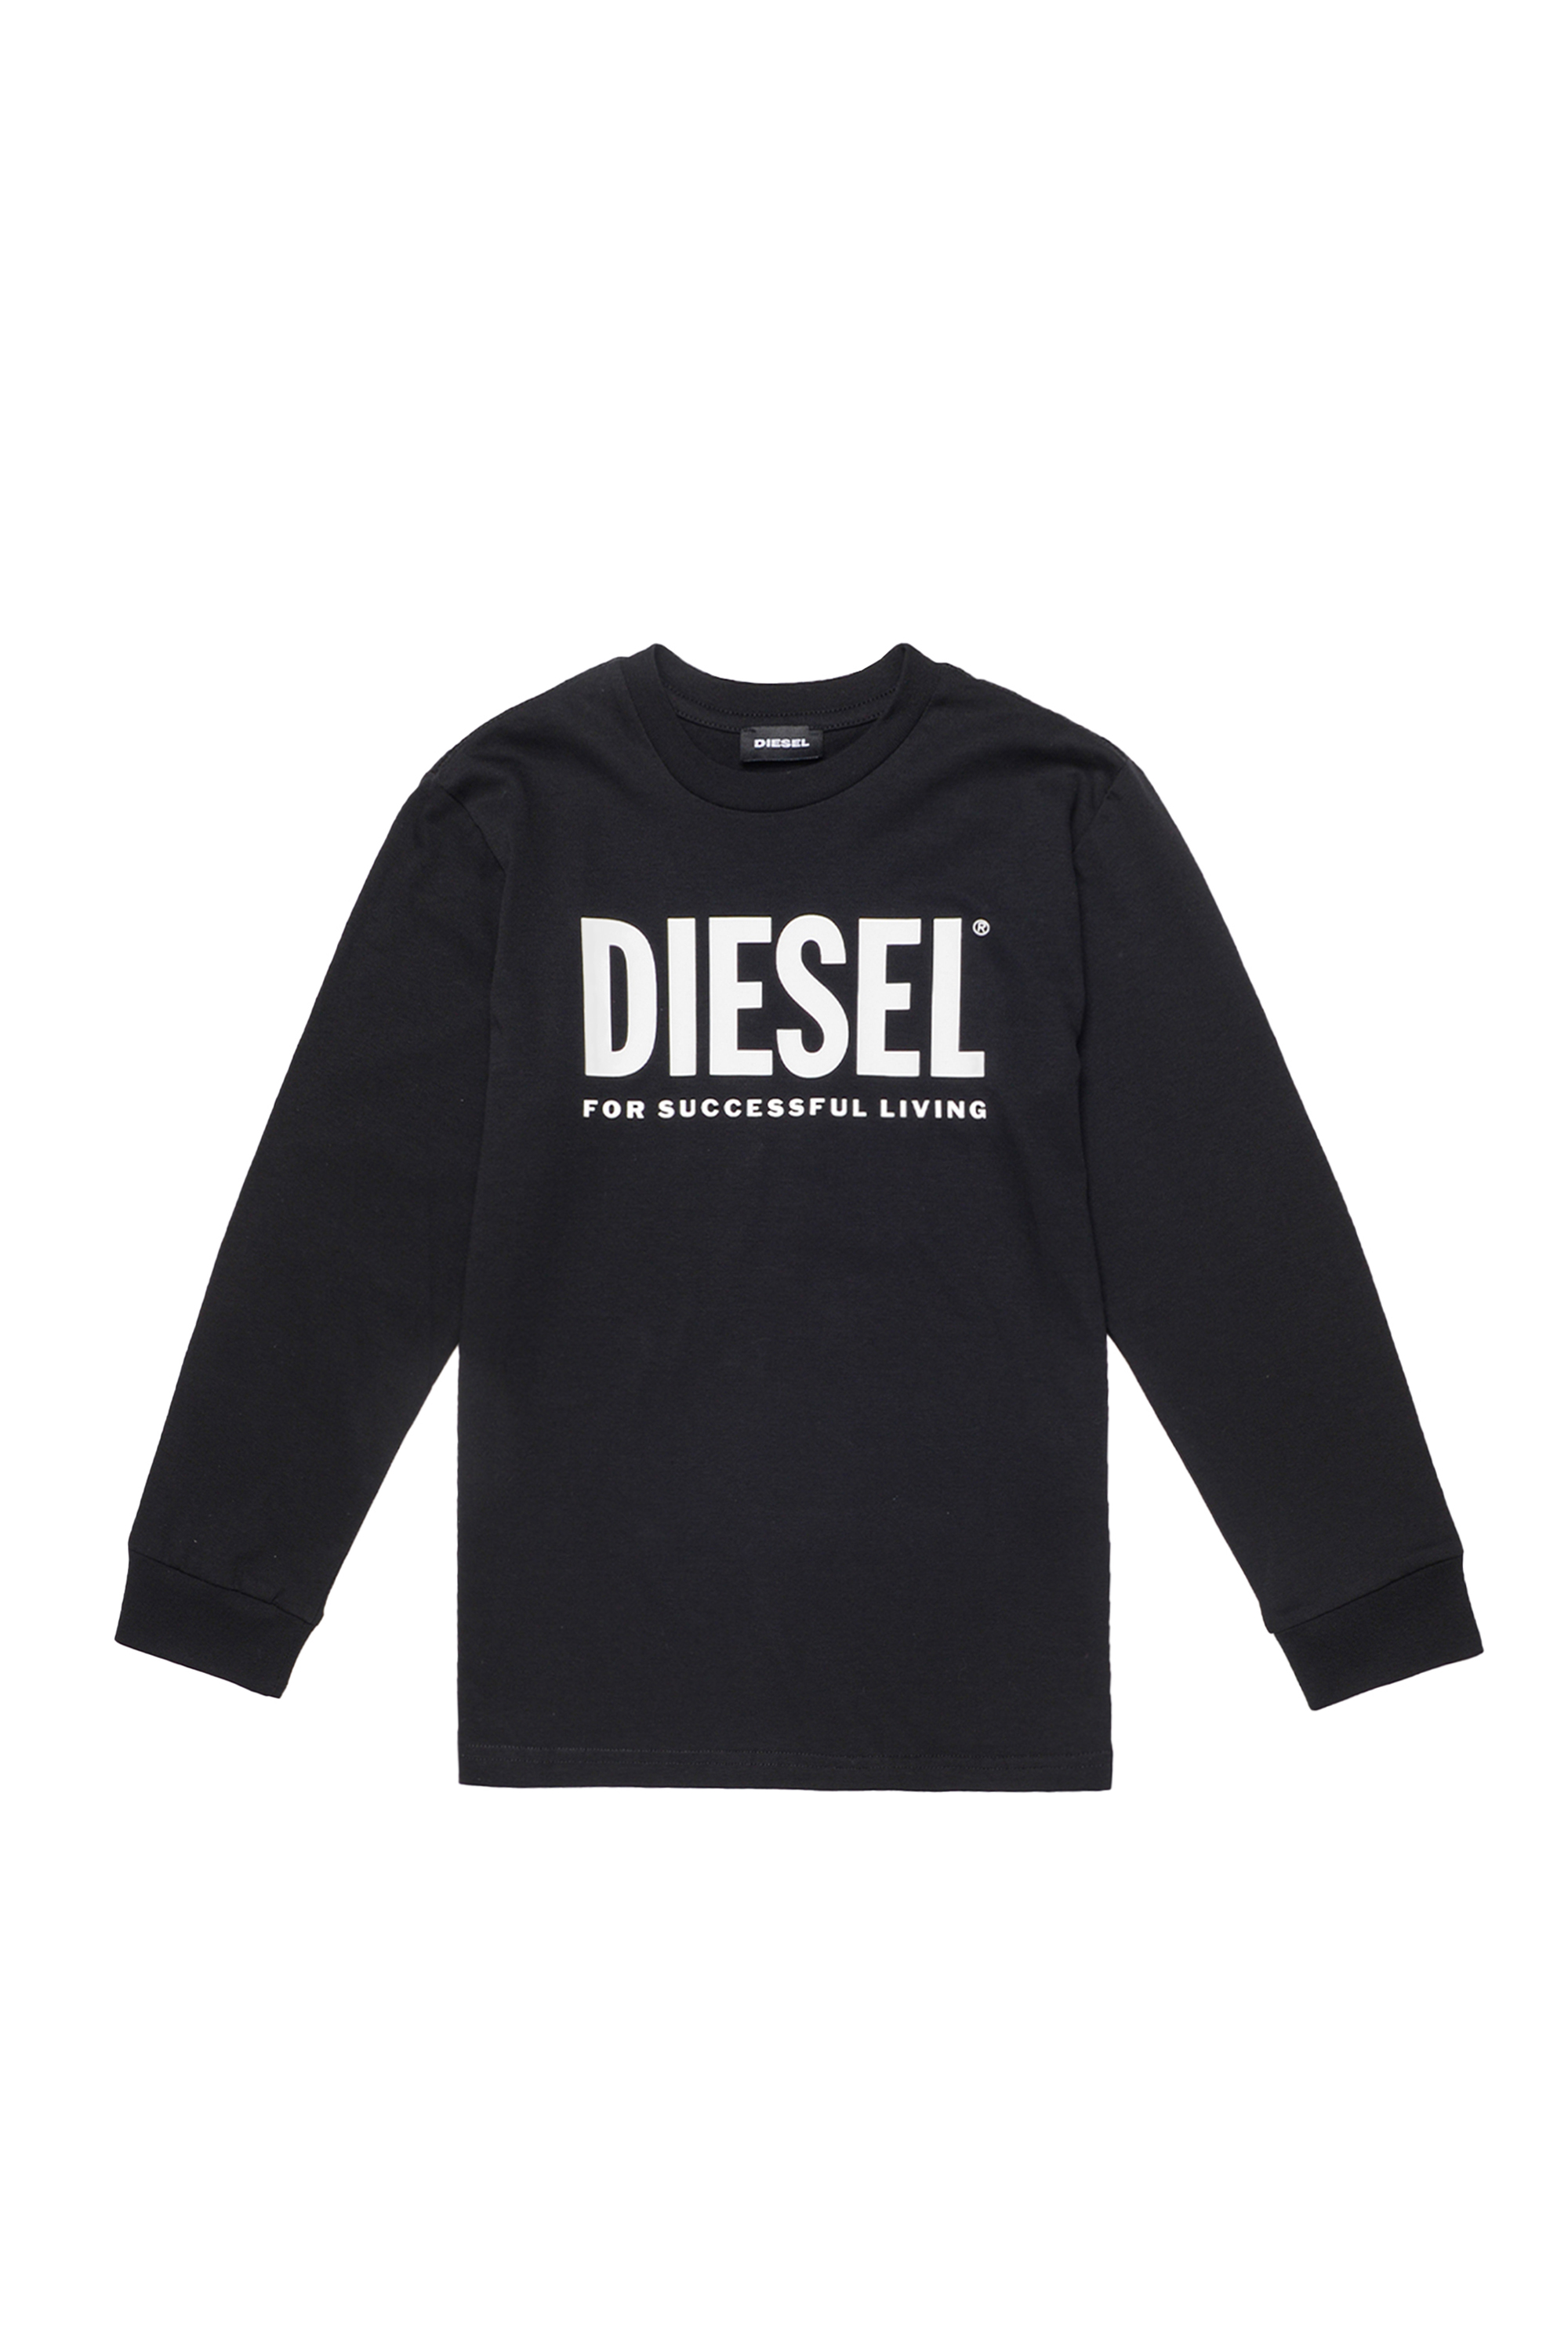 Diesel Kids Sale: Up to 50% Off + Extra 20% Off | Diesel